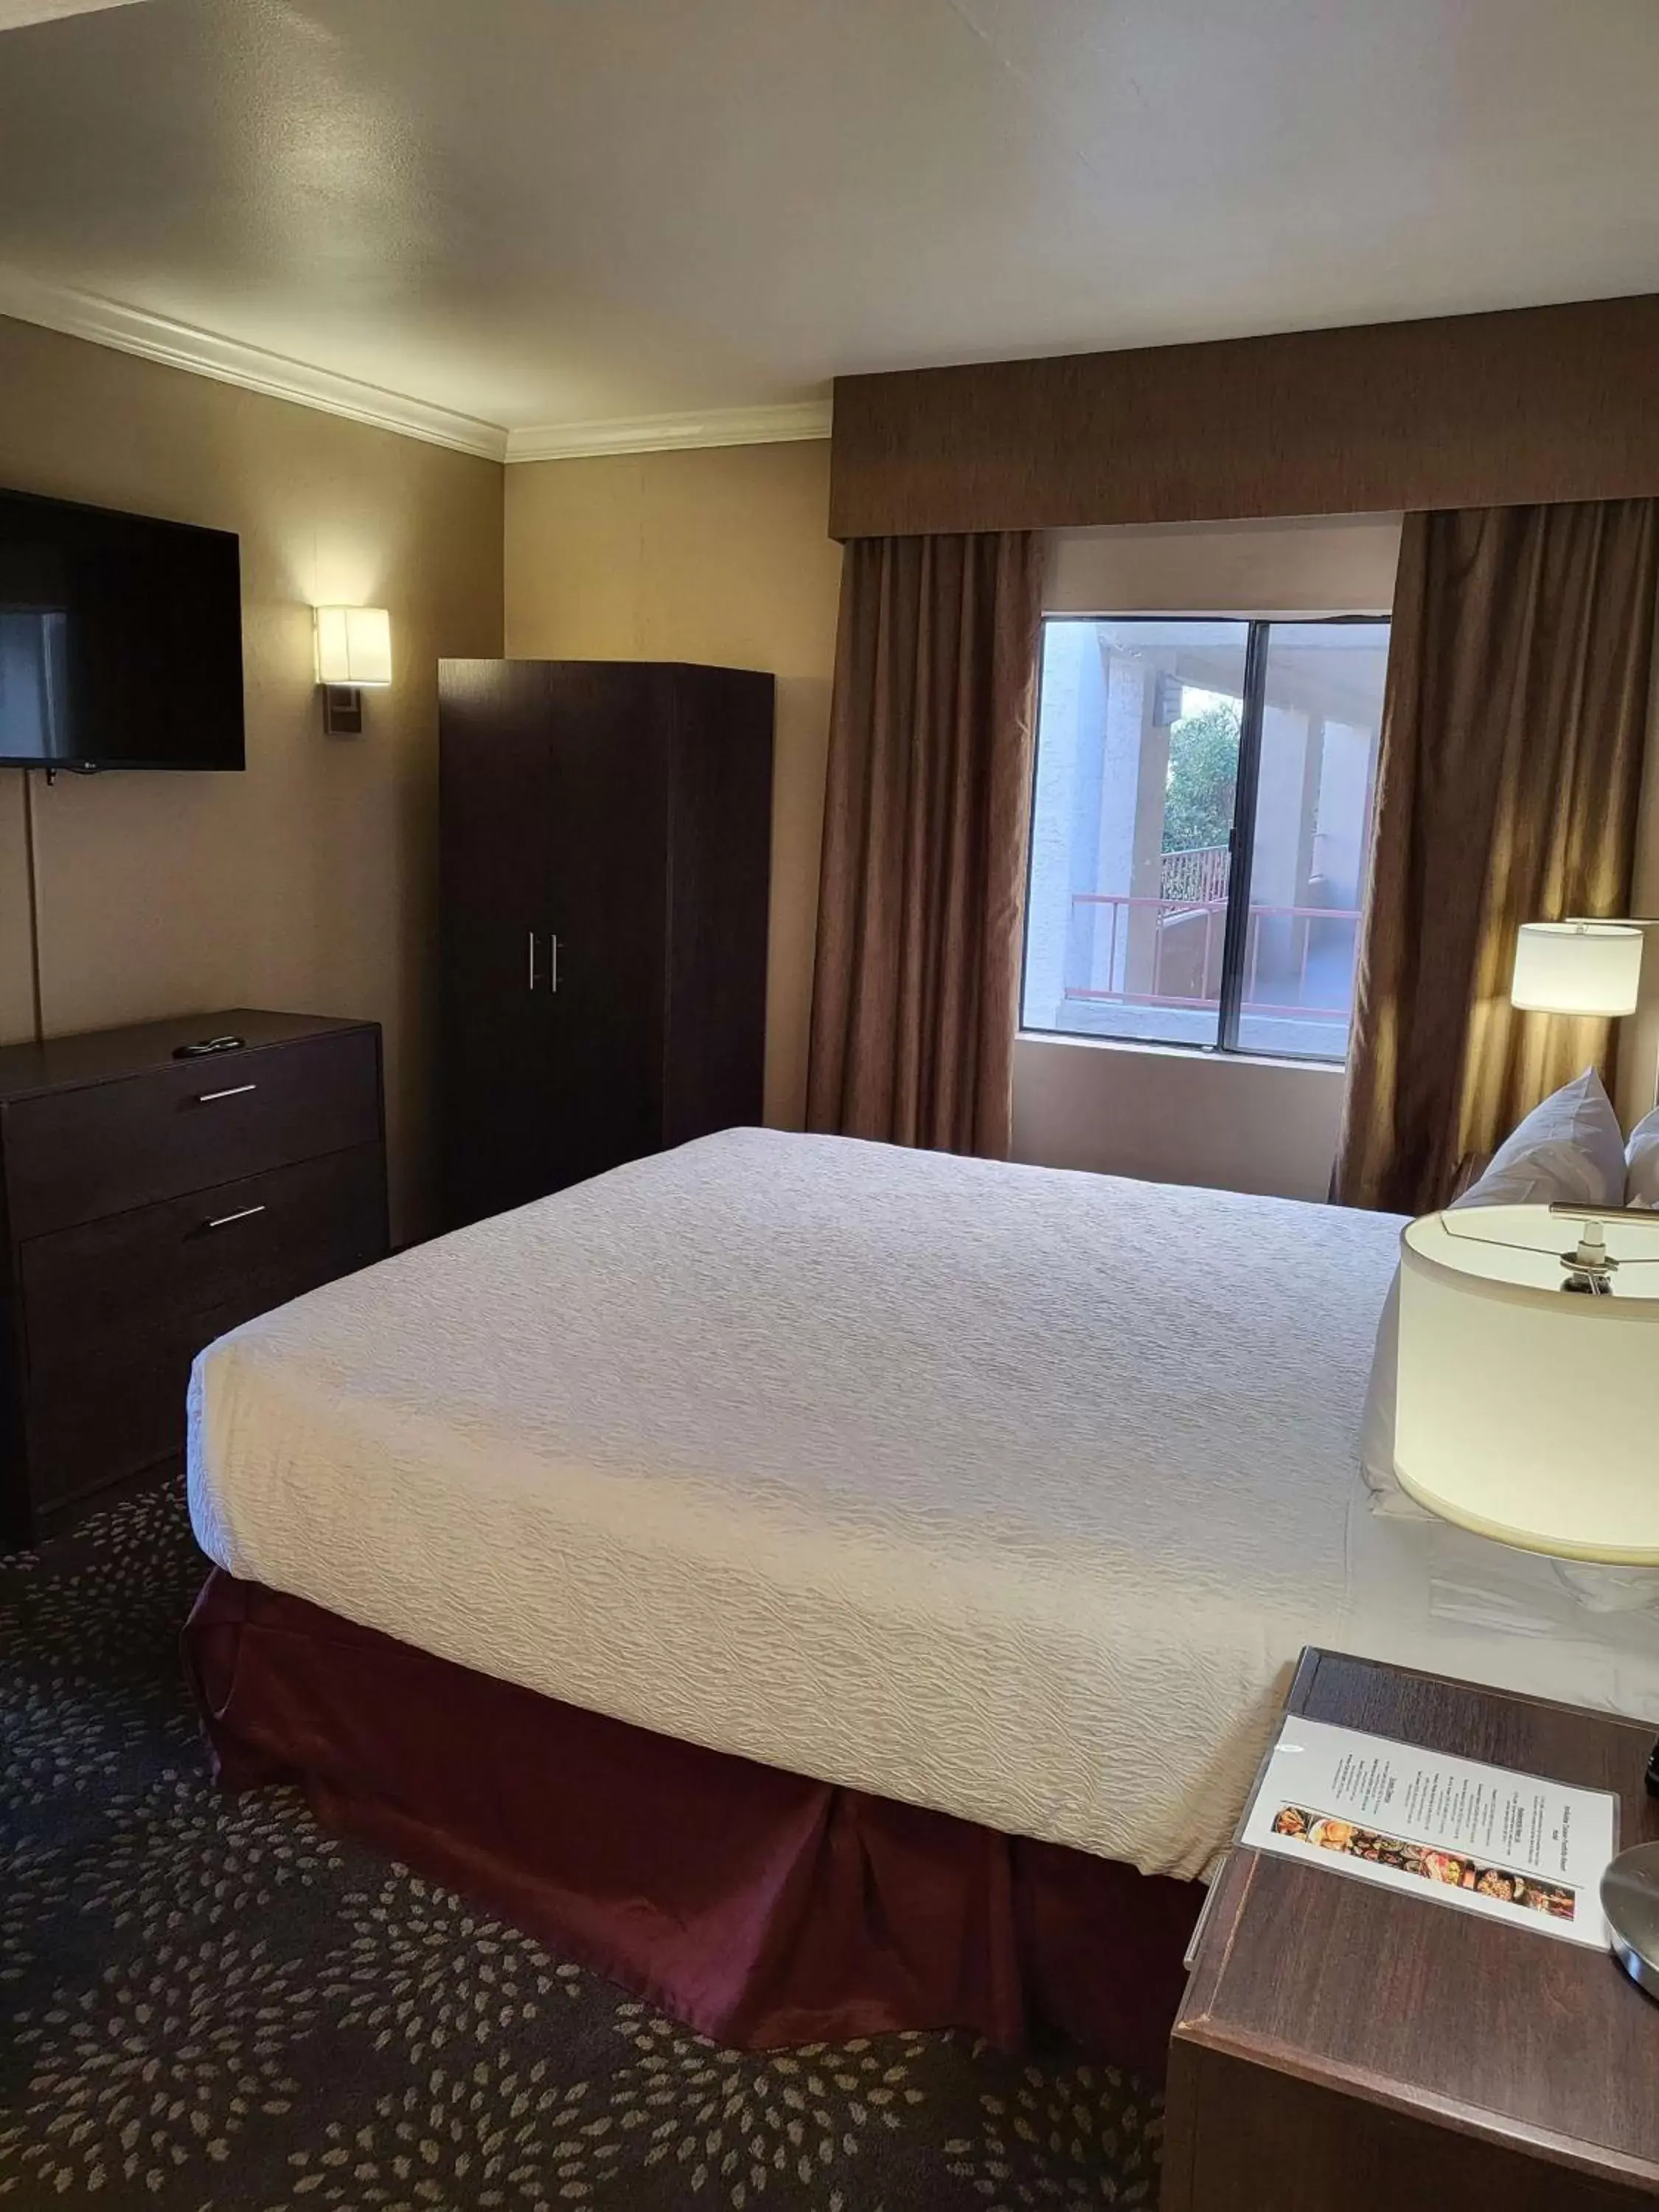 Bedroom, Bed in Best Western InnSuites Tucson Foothills Hotel & Suites